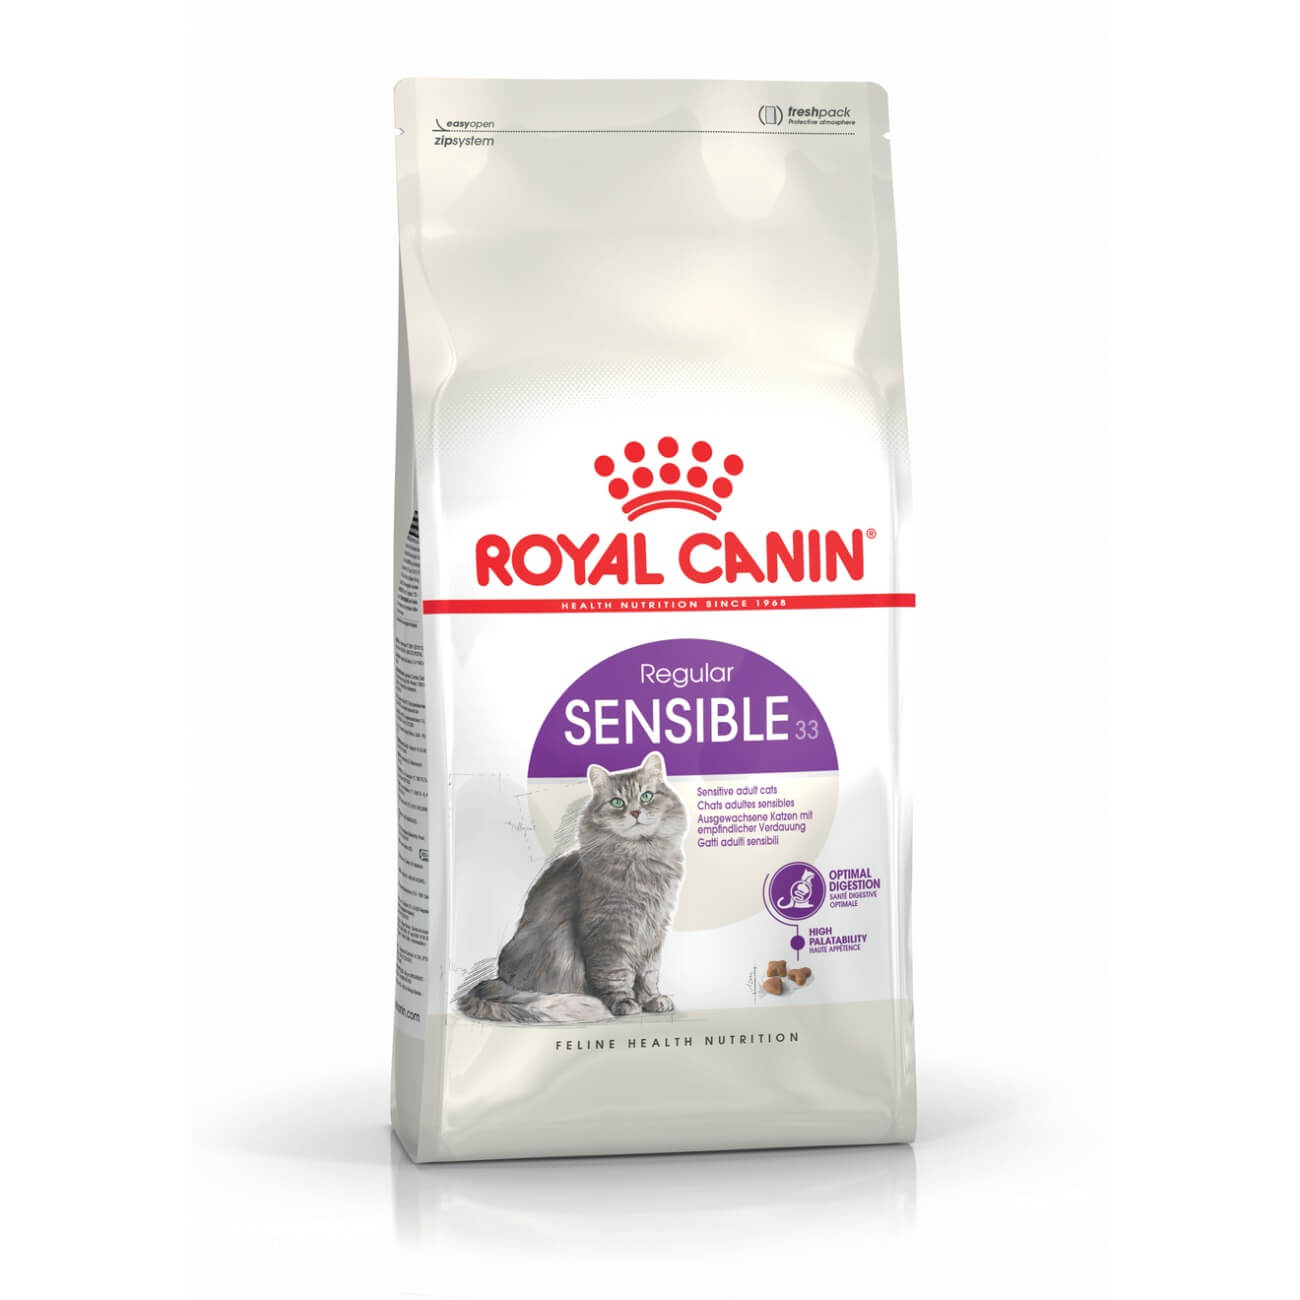 Royal Canin Sensible - suha hrana za...